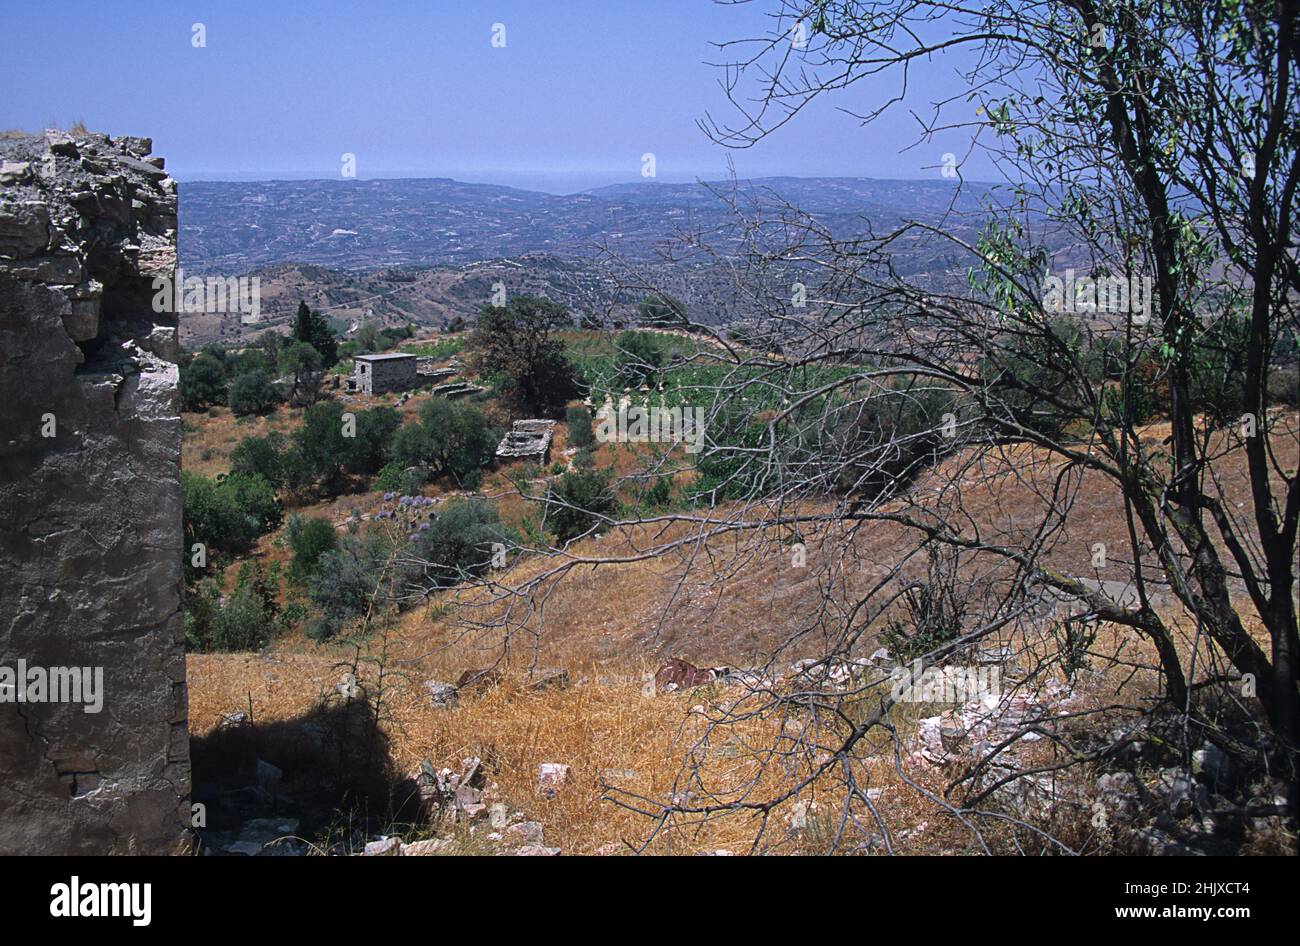 Le village abandonné d'Ayios Fotios, district de Paphos, Chypre.Le village a subi de graves glissements de terrain après de fortes pluies à la fin des années 60 et a dû être évacué. Banque D'Images